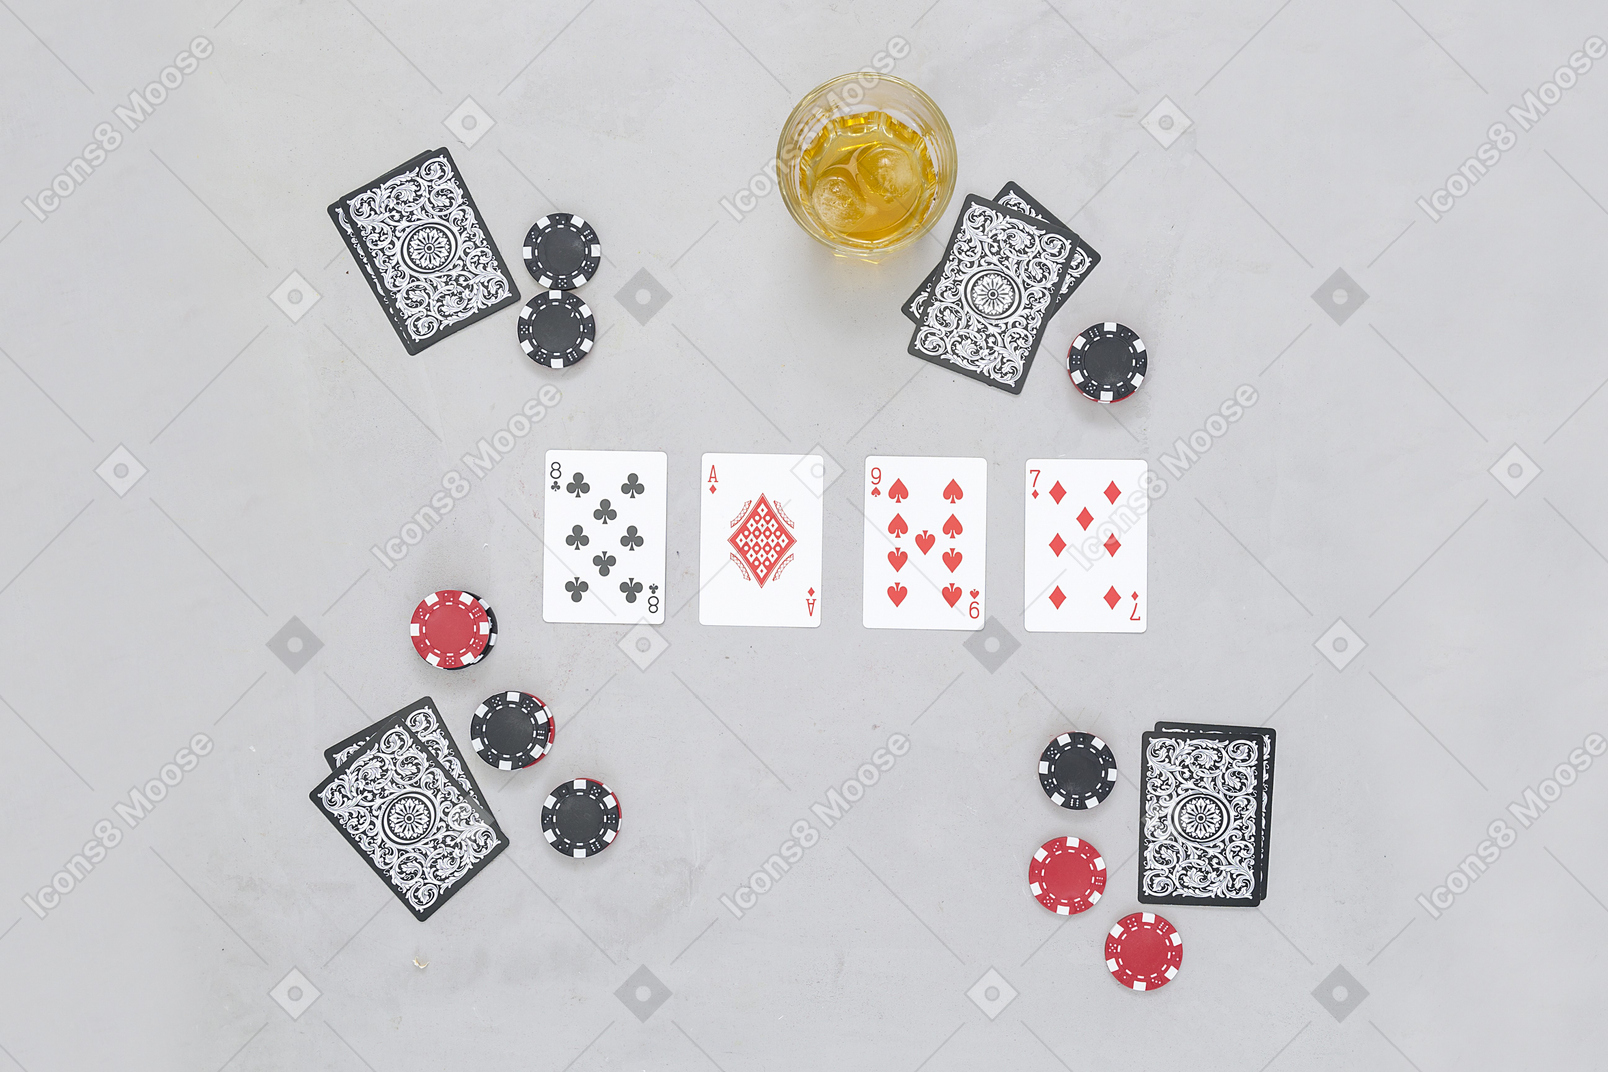 В настольные карточные игры интересно играть